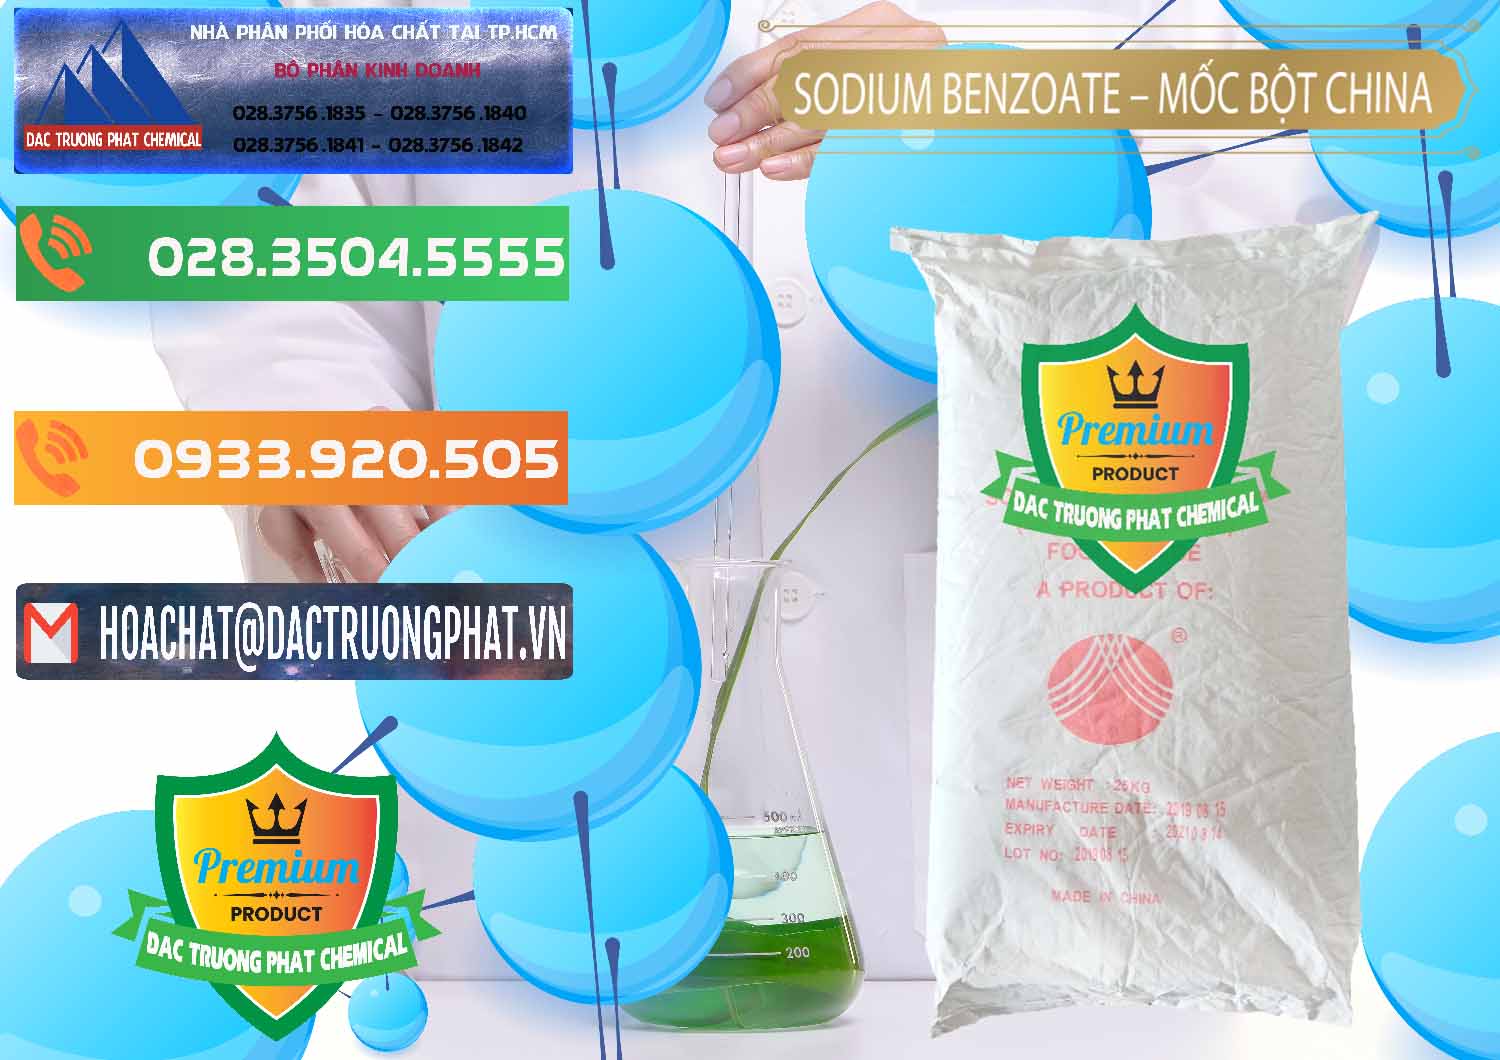 Cty bán và phân phối Sodium Benzoate - Mốc Bột Chữ Cam Food Grade Trung Quốc China - 0135 - Nơi cung cấp - phân phối hóa chất tại TP.HCM - hoachatxulynuoc.com.vn